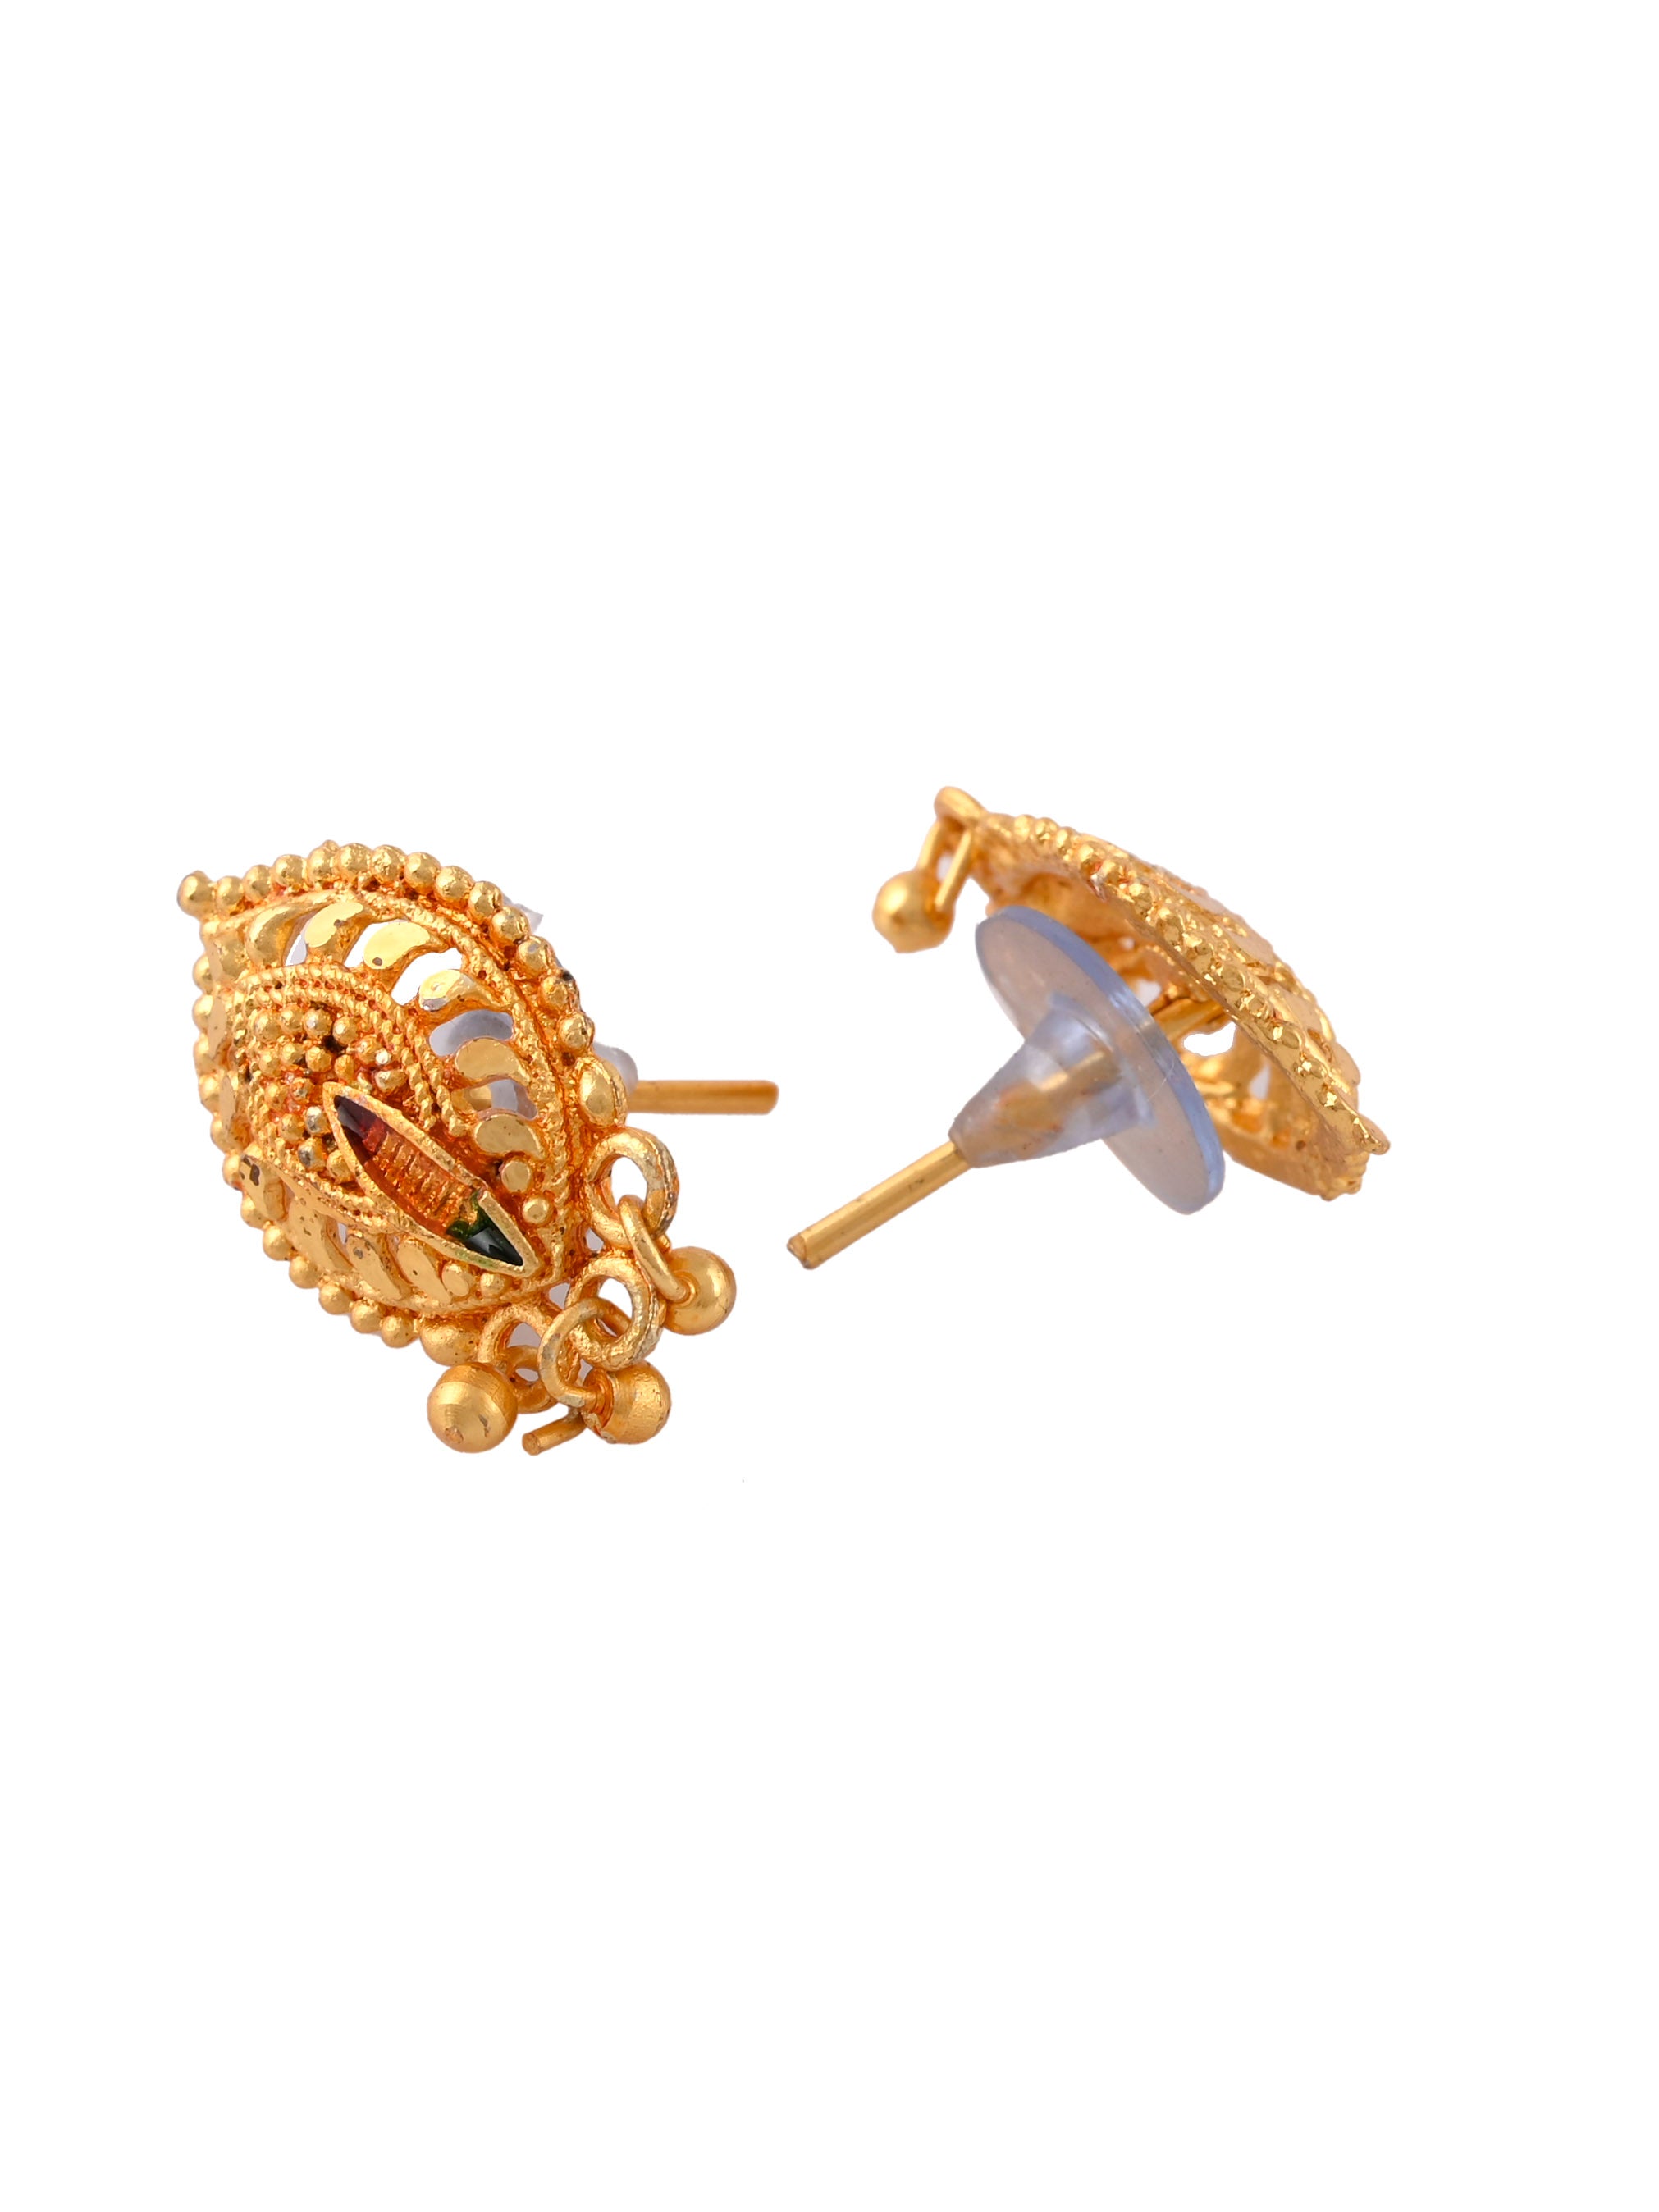 Long Gold Earrings Design Latest   Jhumka Earrings Design  Tops  Stud   Chandbali Gold Earrings  YouTube